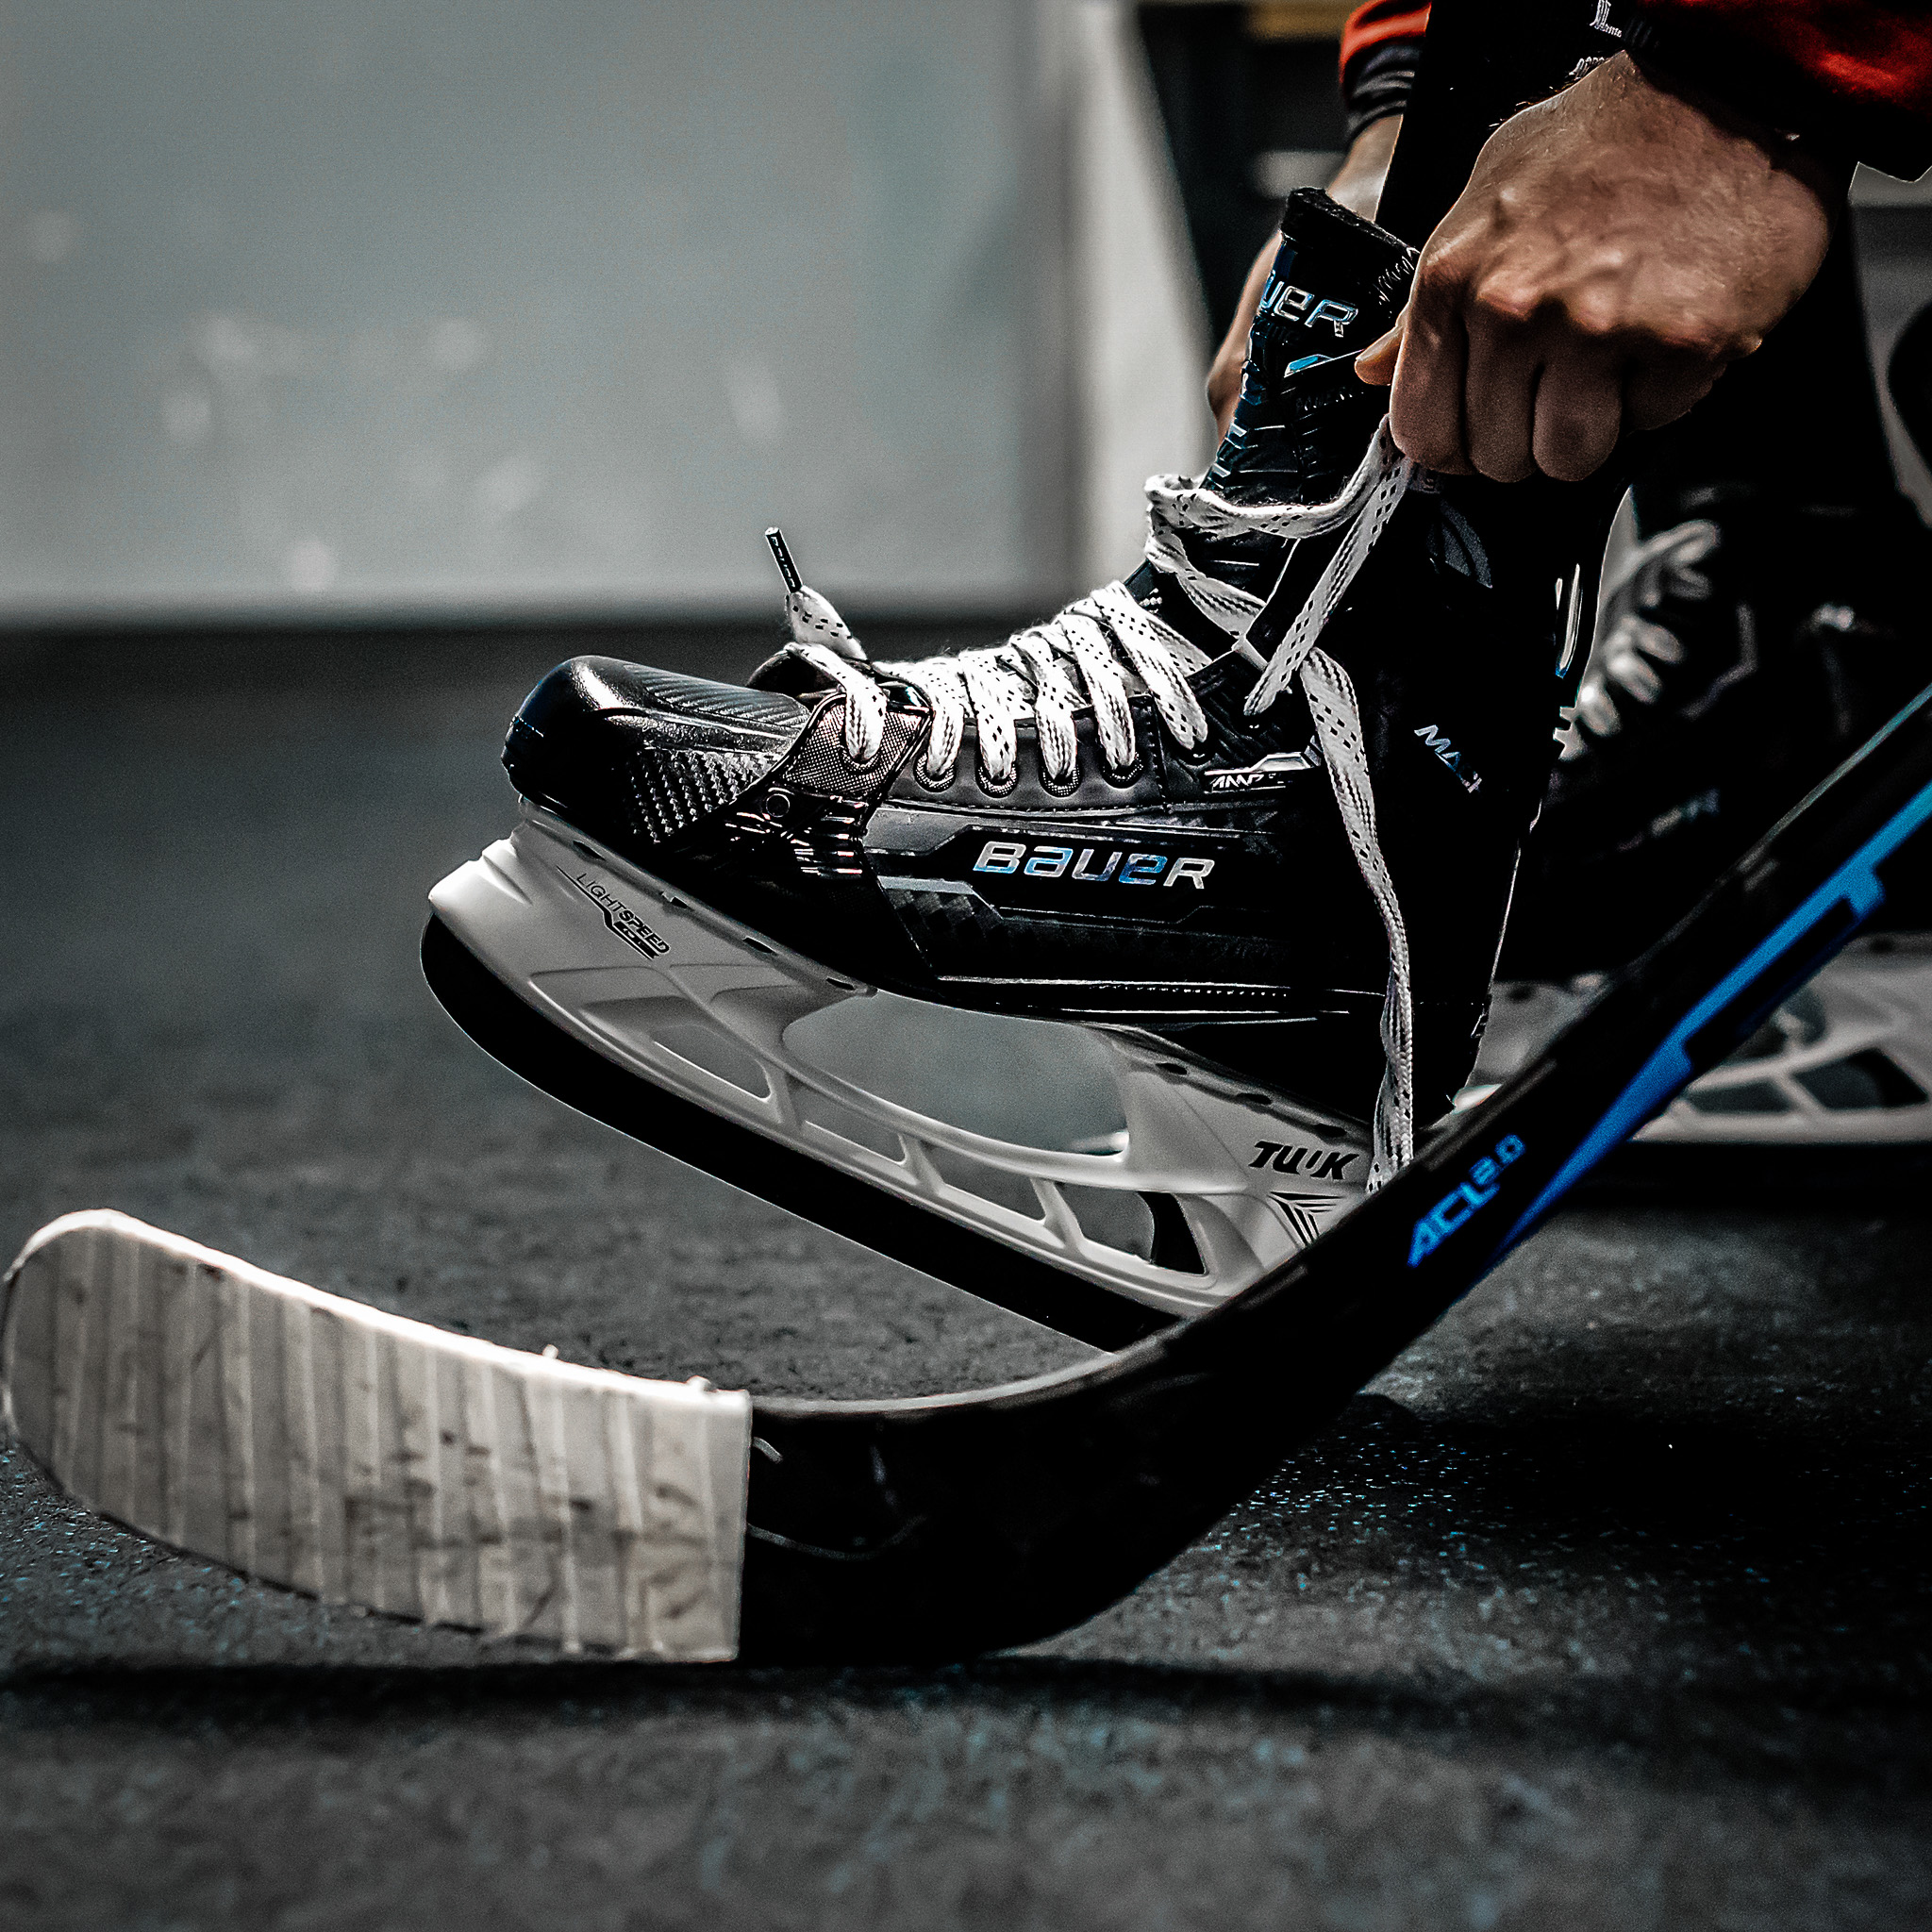 Deine Eishockey Checkliste - Deine Checkliste für Eishockey 